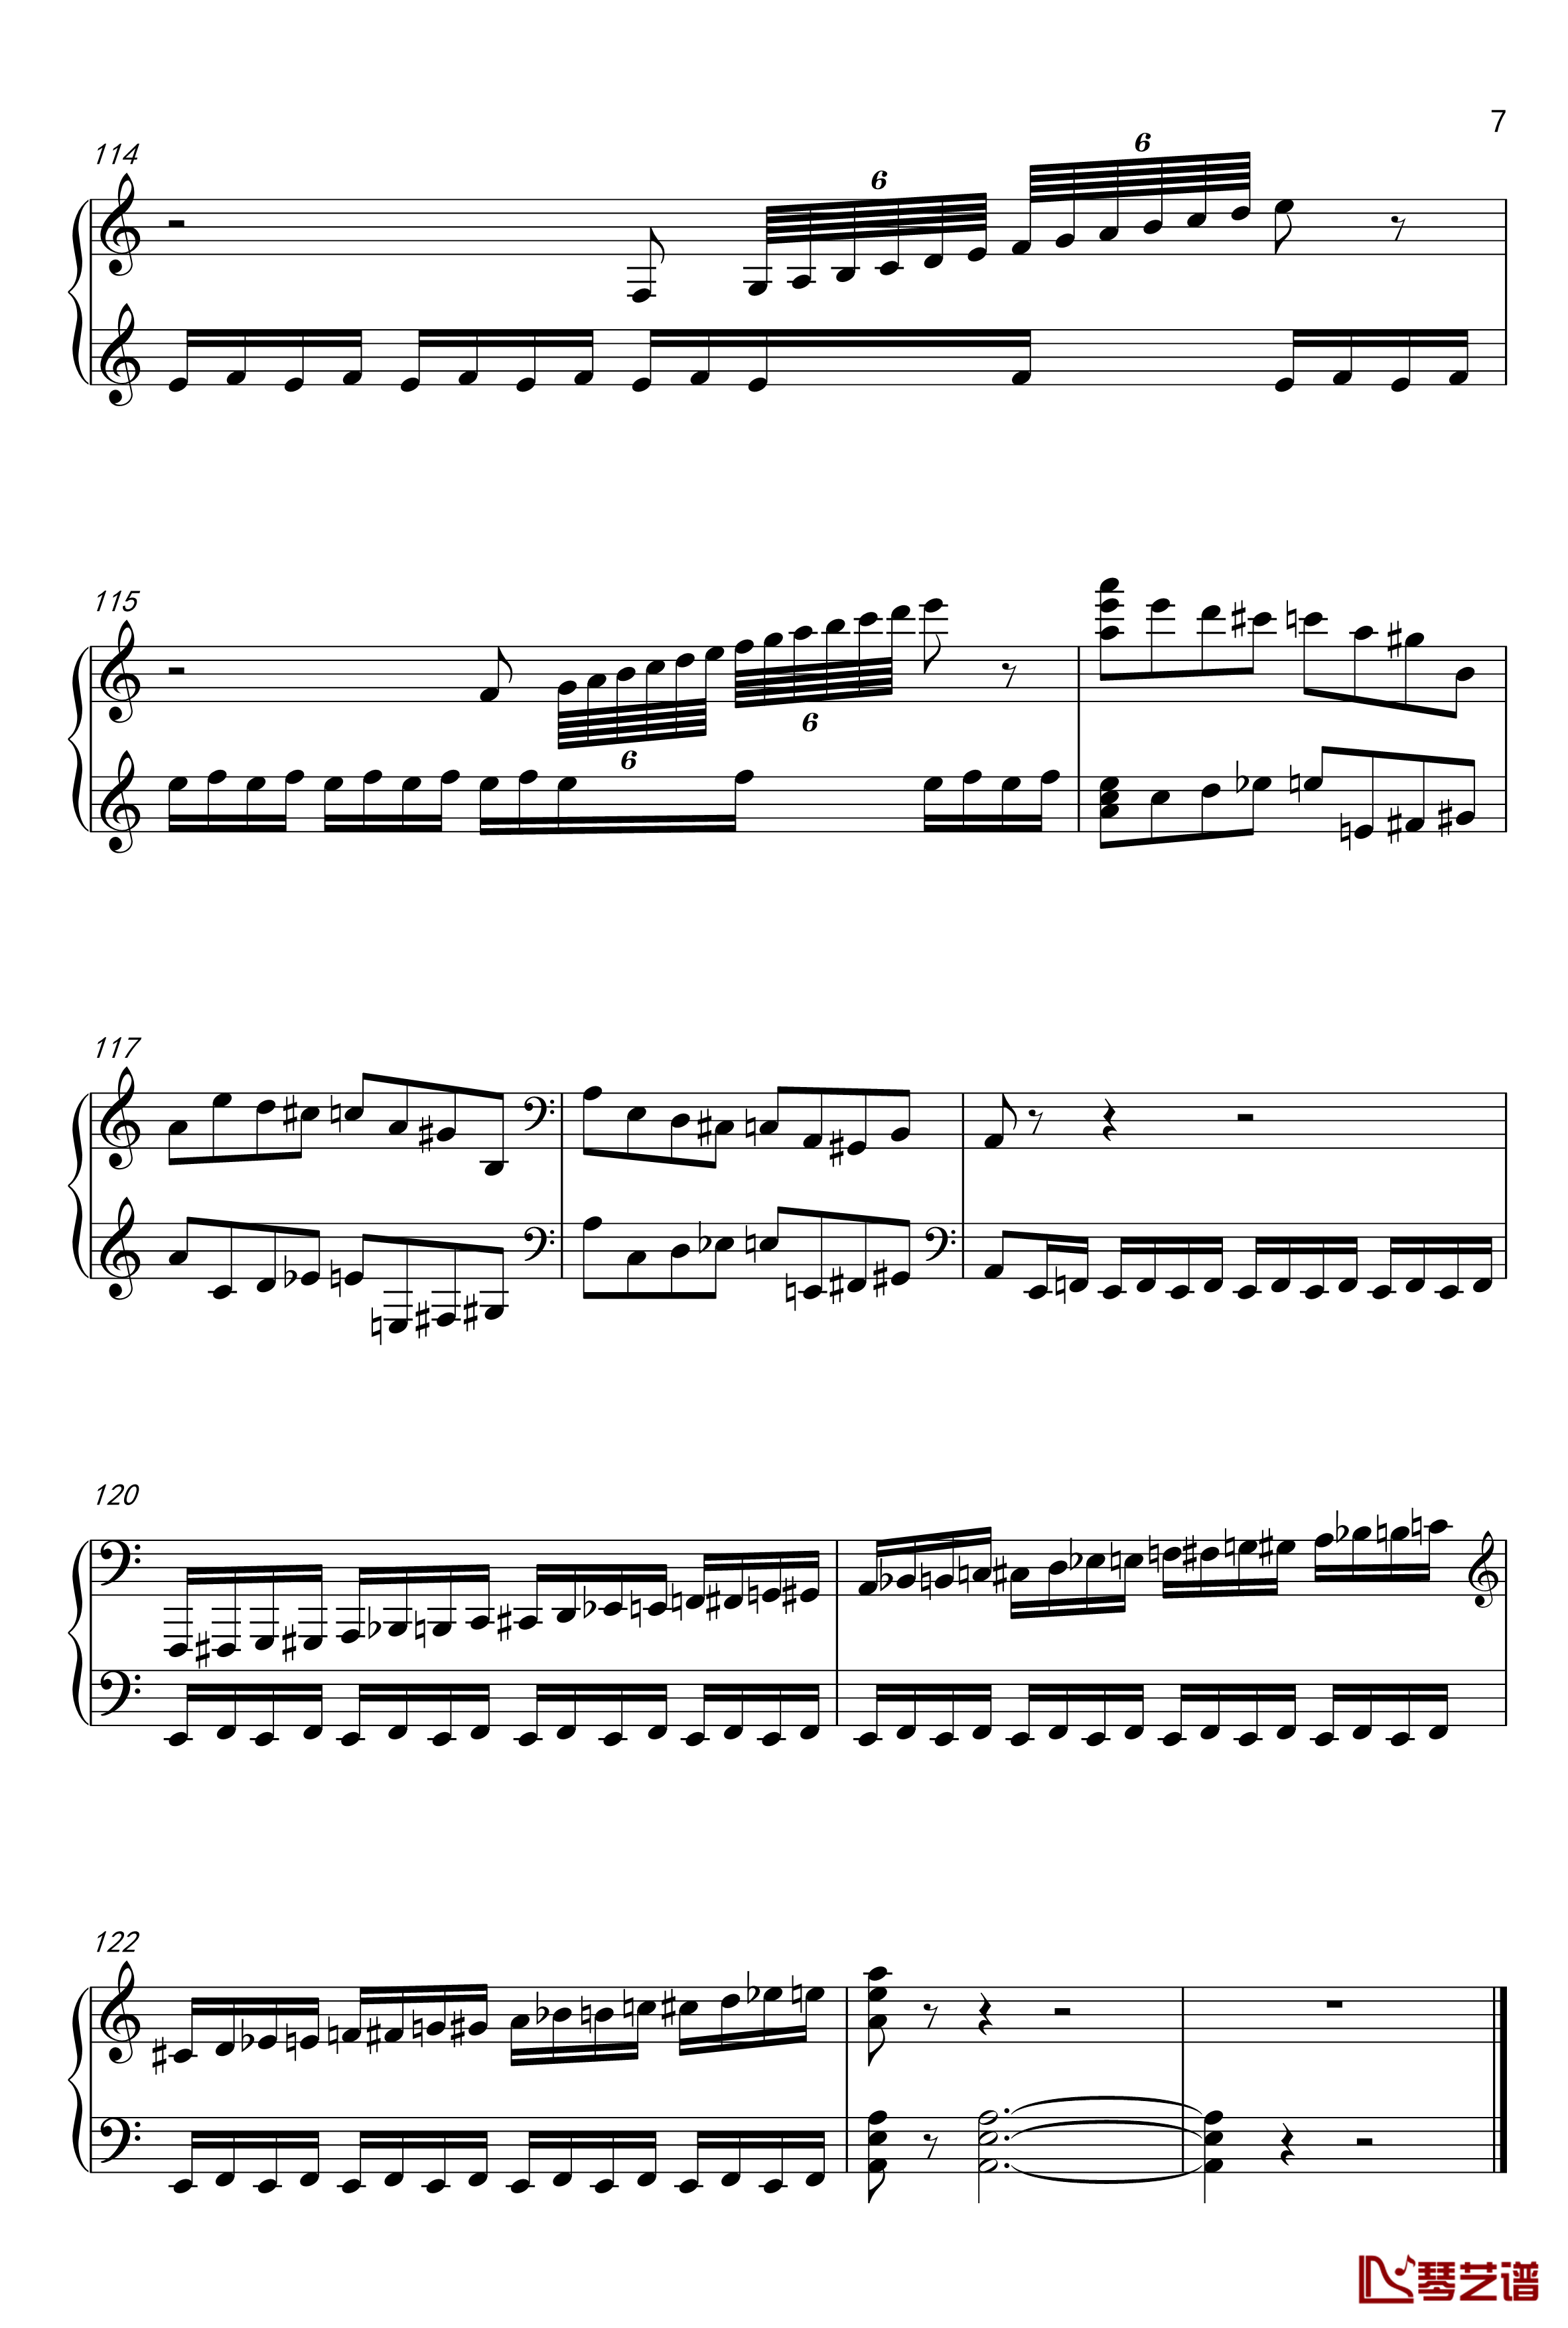 布吉乌吉野蜂飞舞钢琴谱爵士版 -里姆斯基-柯萨科夫7